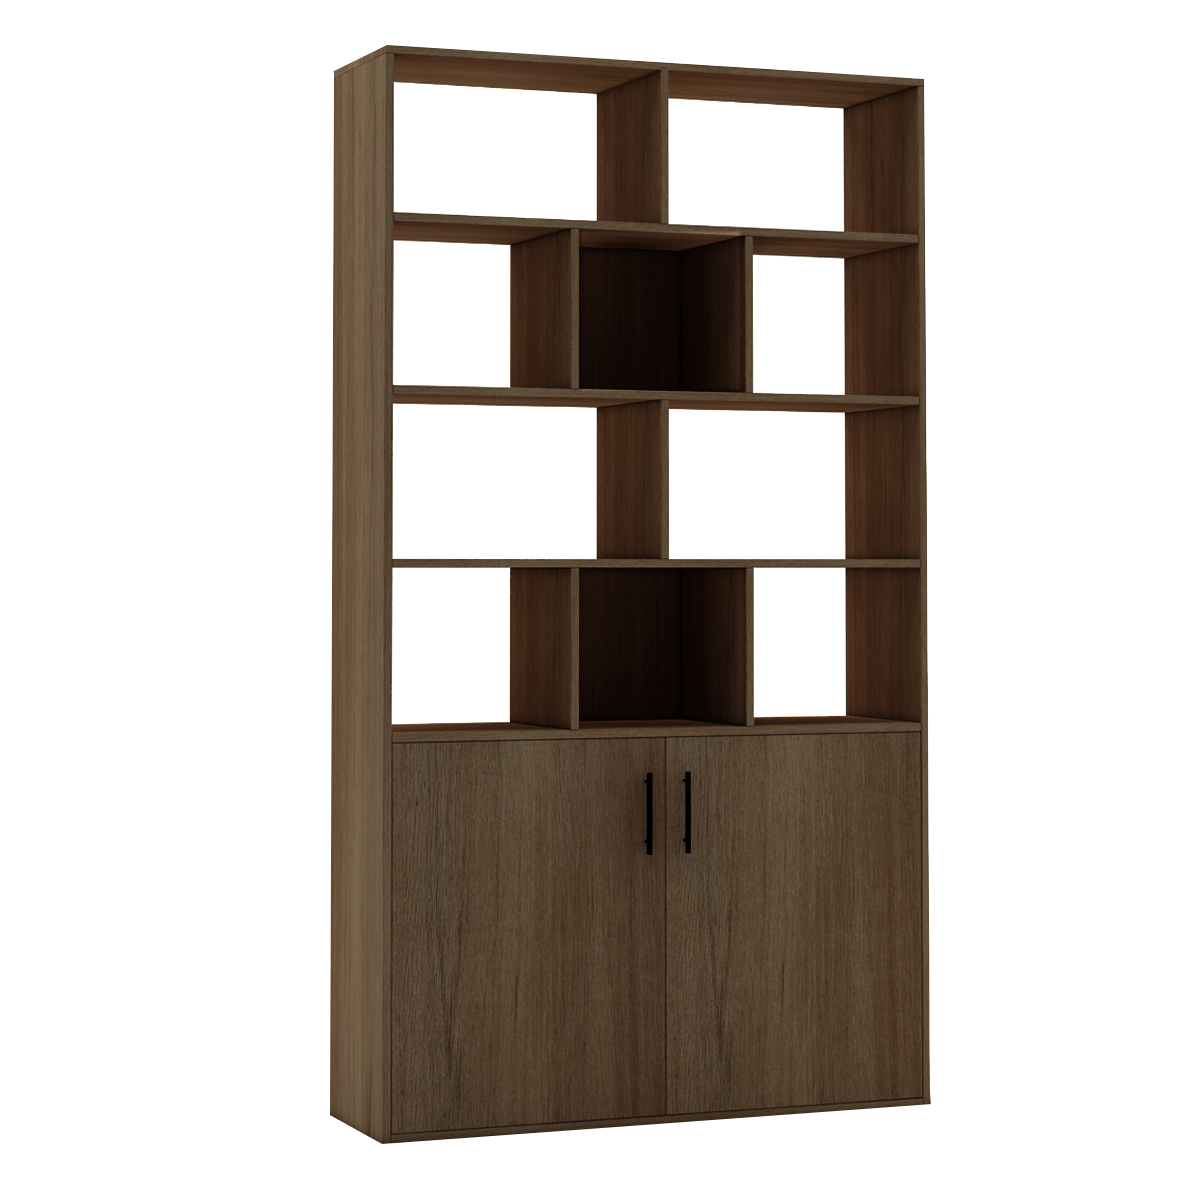 BlackWhiteOak-Dark-CherryWalnut-Wooden-Bookcase-Storage-Bookcase-with-Door-Storage-Finishing-Bookcas-1909997-12